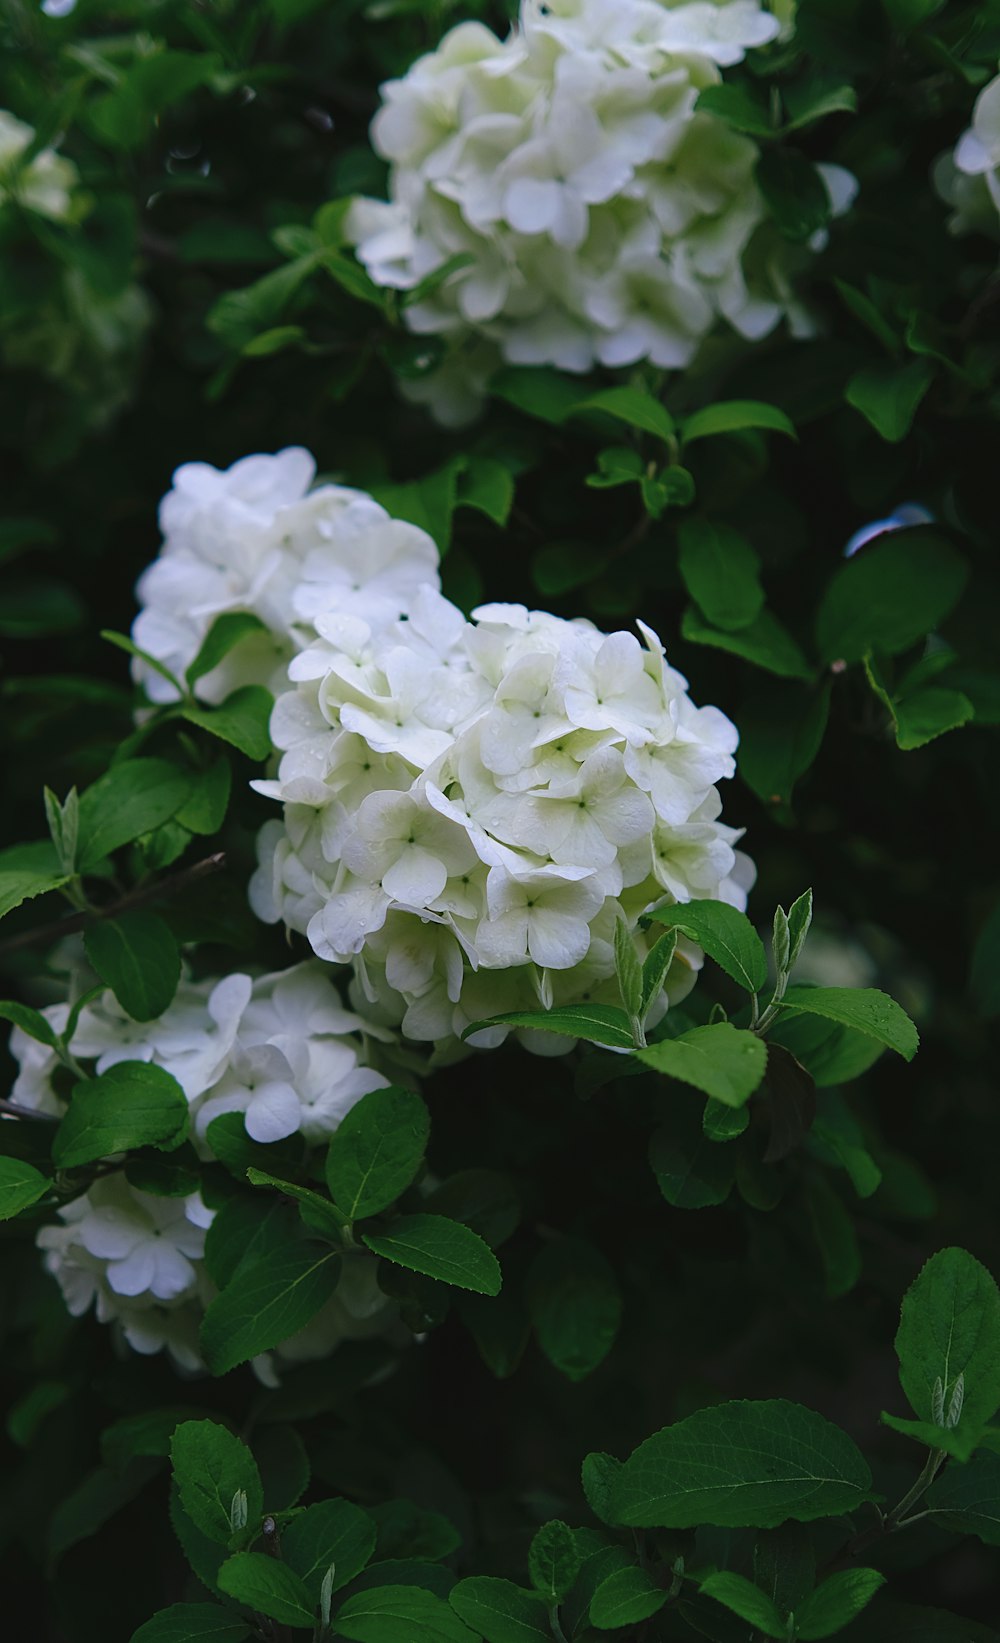 fiori bianchi con foglie verdi su un cespuglio